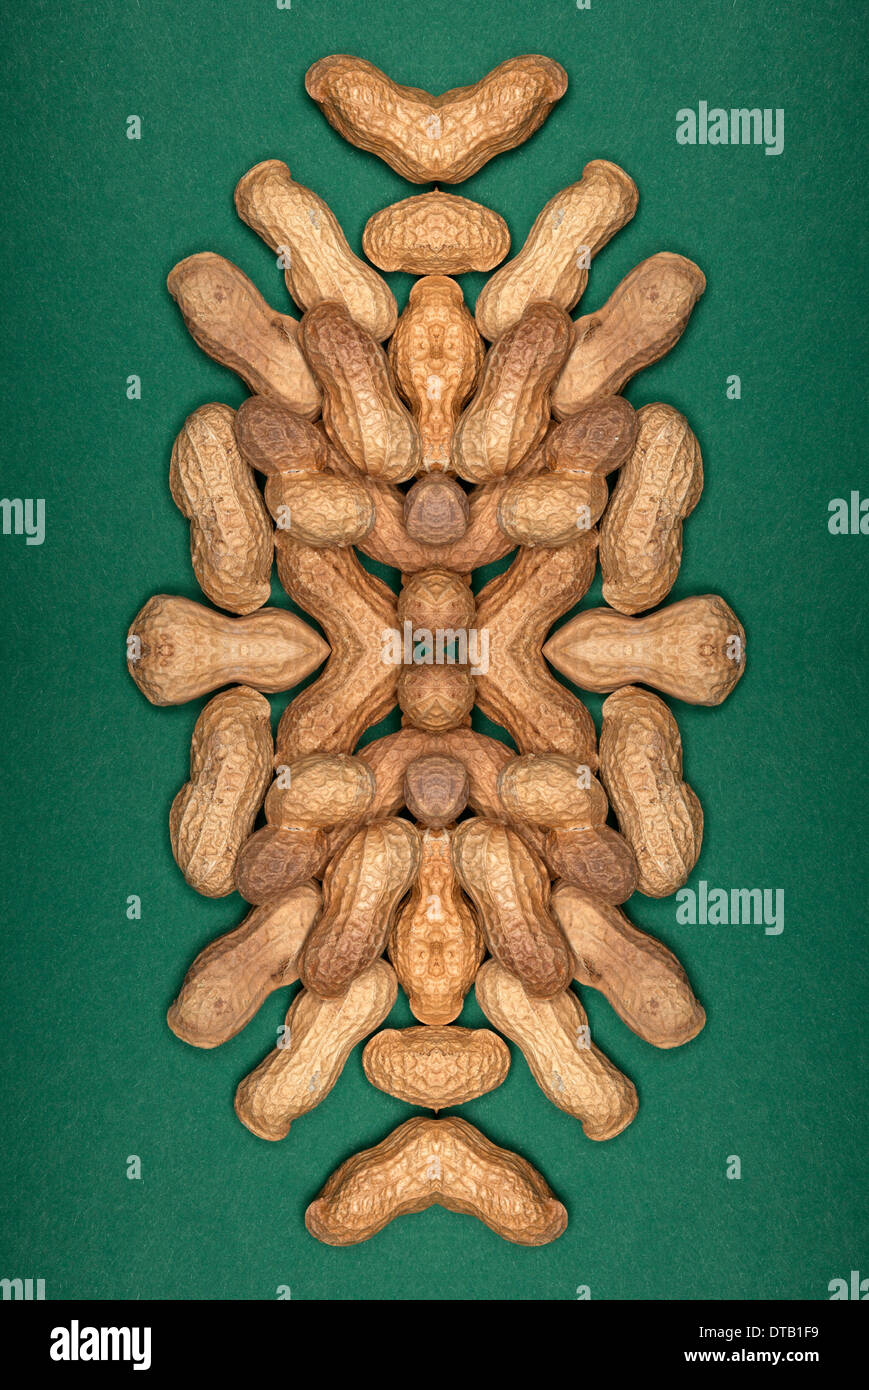 Un composito digitale delle immagini speculari di una disposizione di arachidi Foto Stock